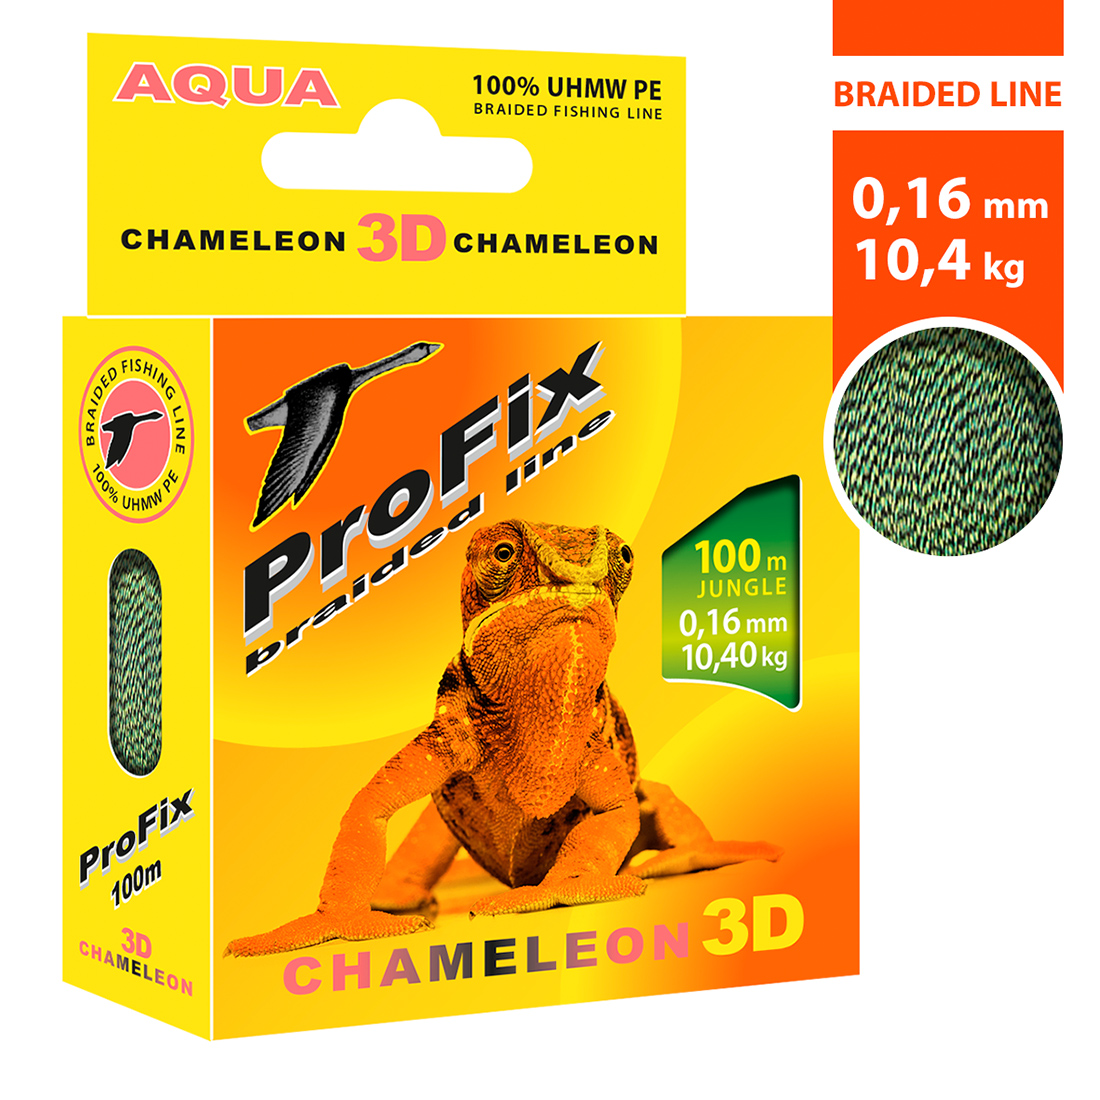 Плетеный шнур AQUA ProFix Chameleon 3D Jungle 0,16mm 100m, цвет - Jungle, test - 10,40kg